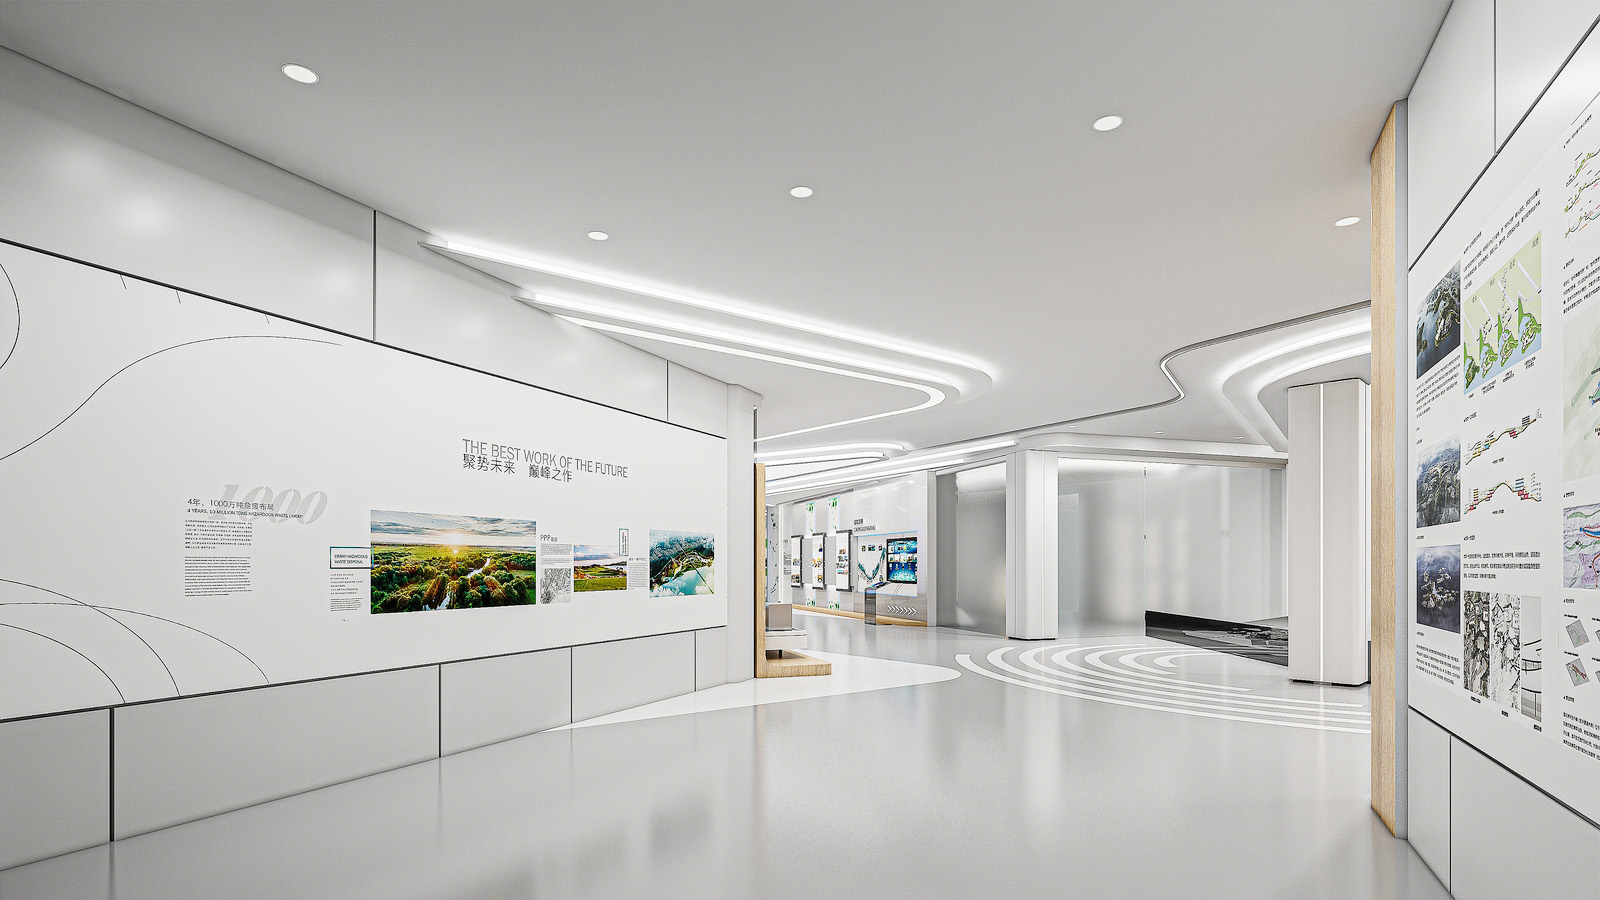 展厅展览展示设计效果图施工图室内建模场景建模商业空间设计